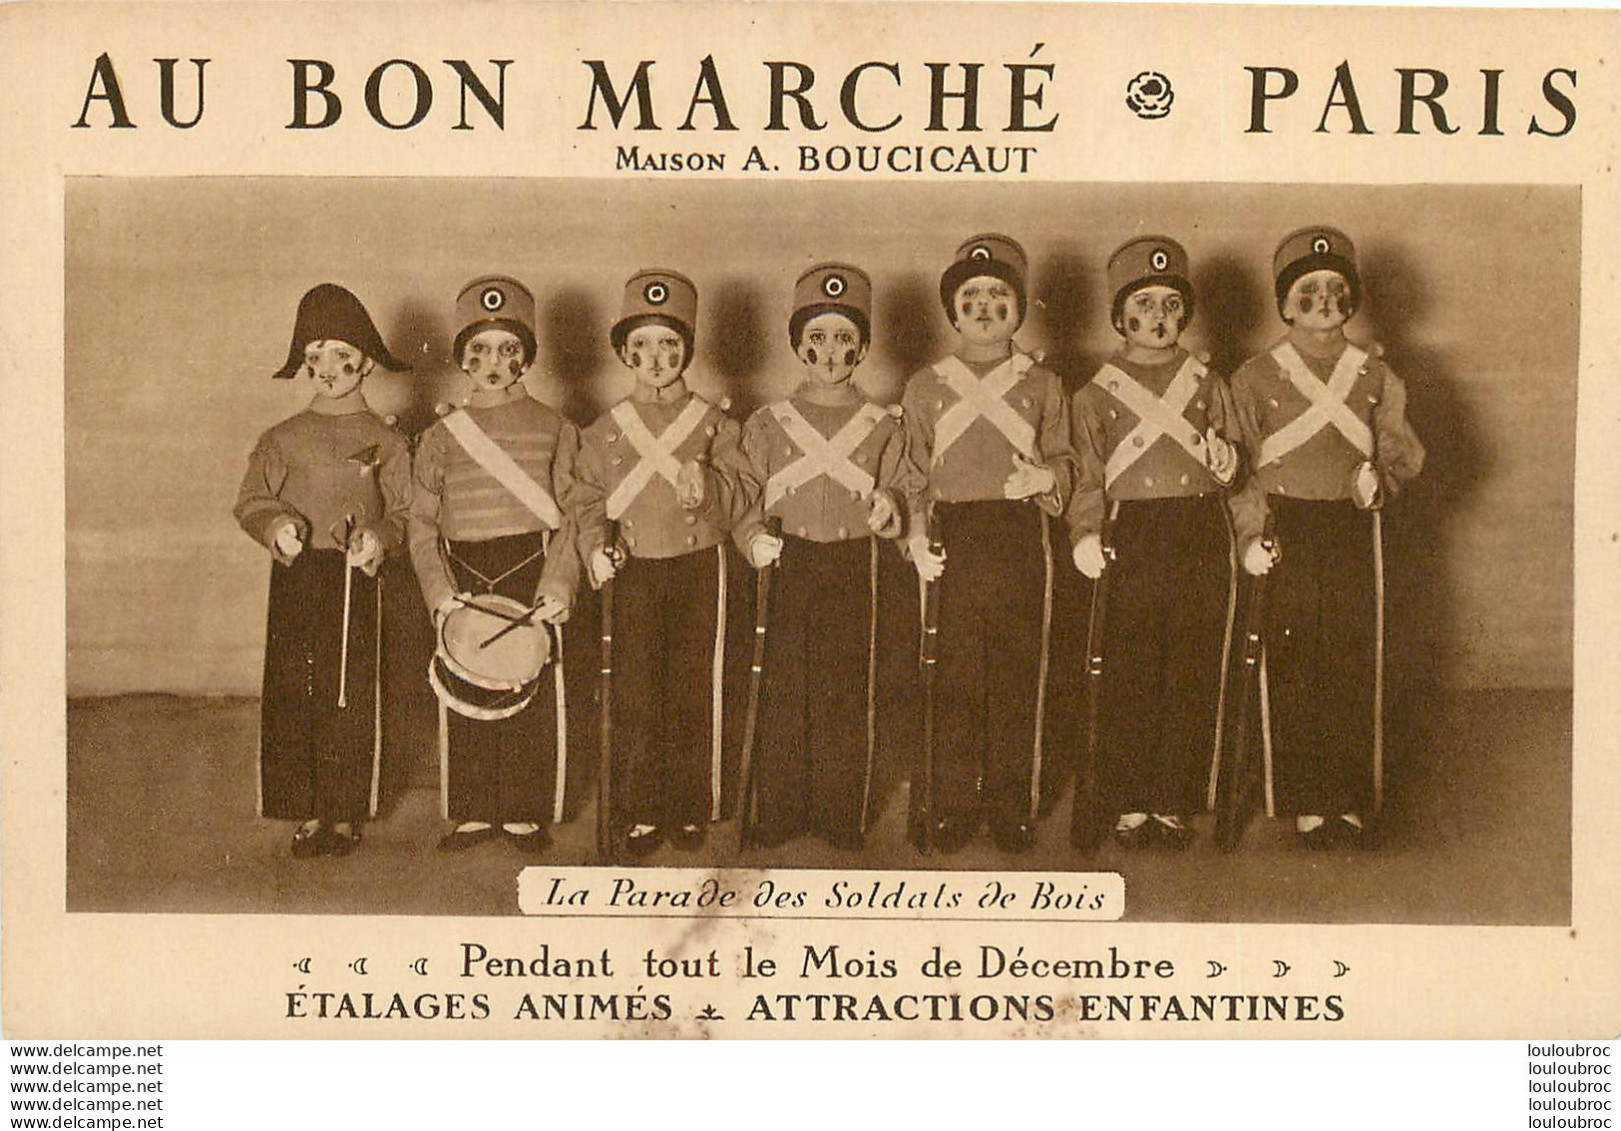 AU BON MARCHE PARIS MAISON BOUCICAUT LA PARADE DES SOLDATS DE BOIS - Magasins